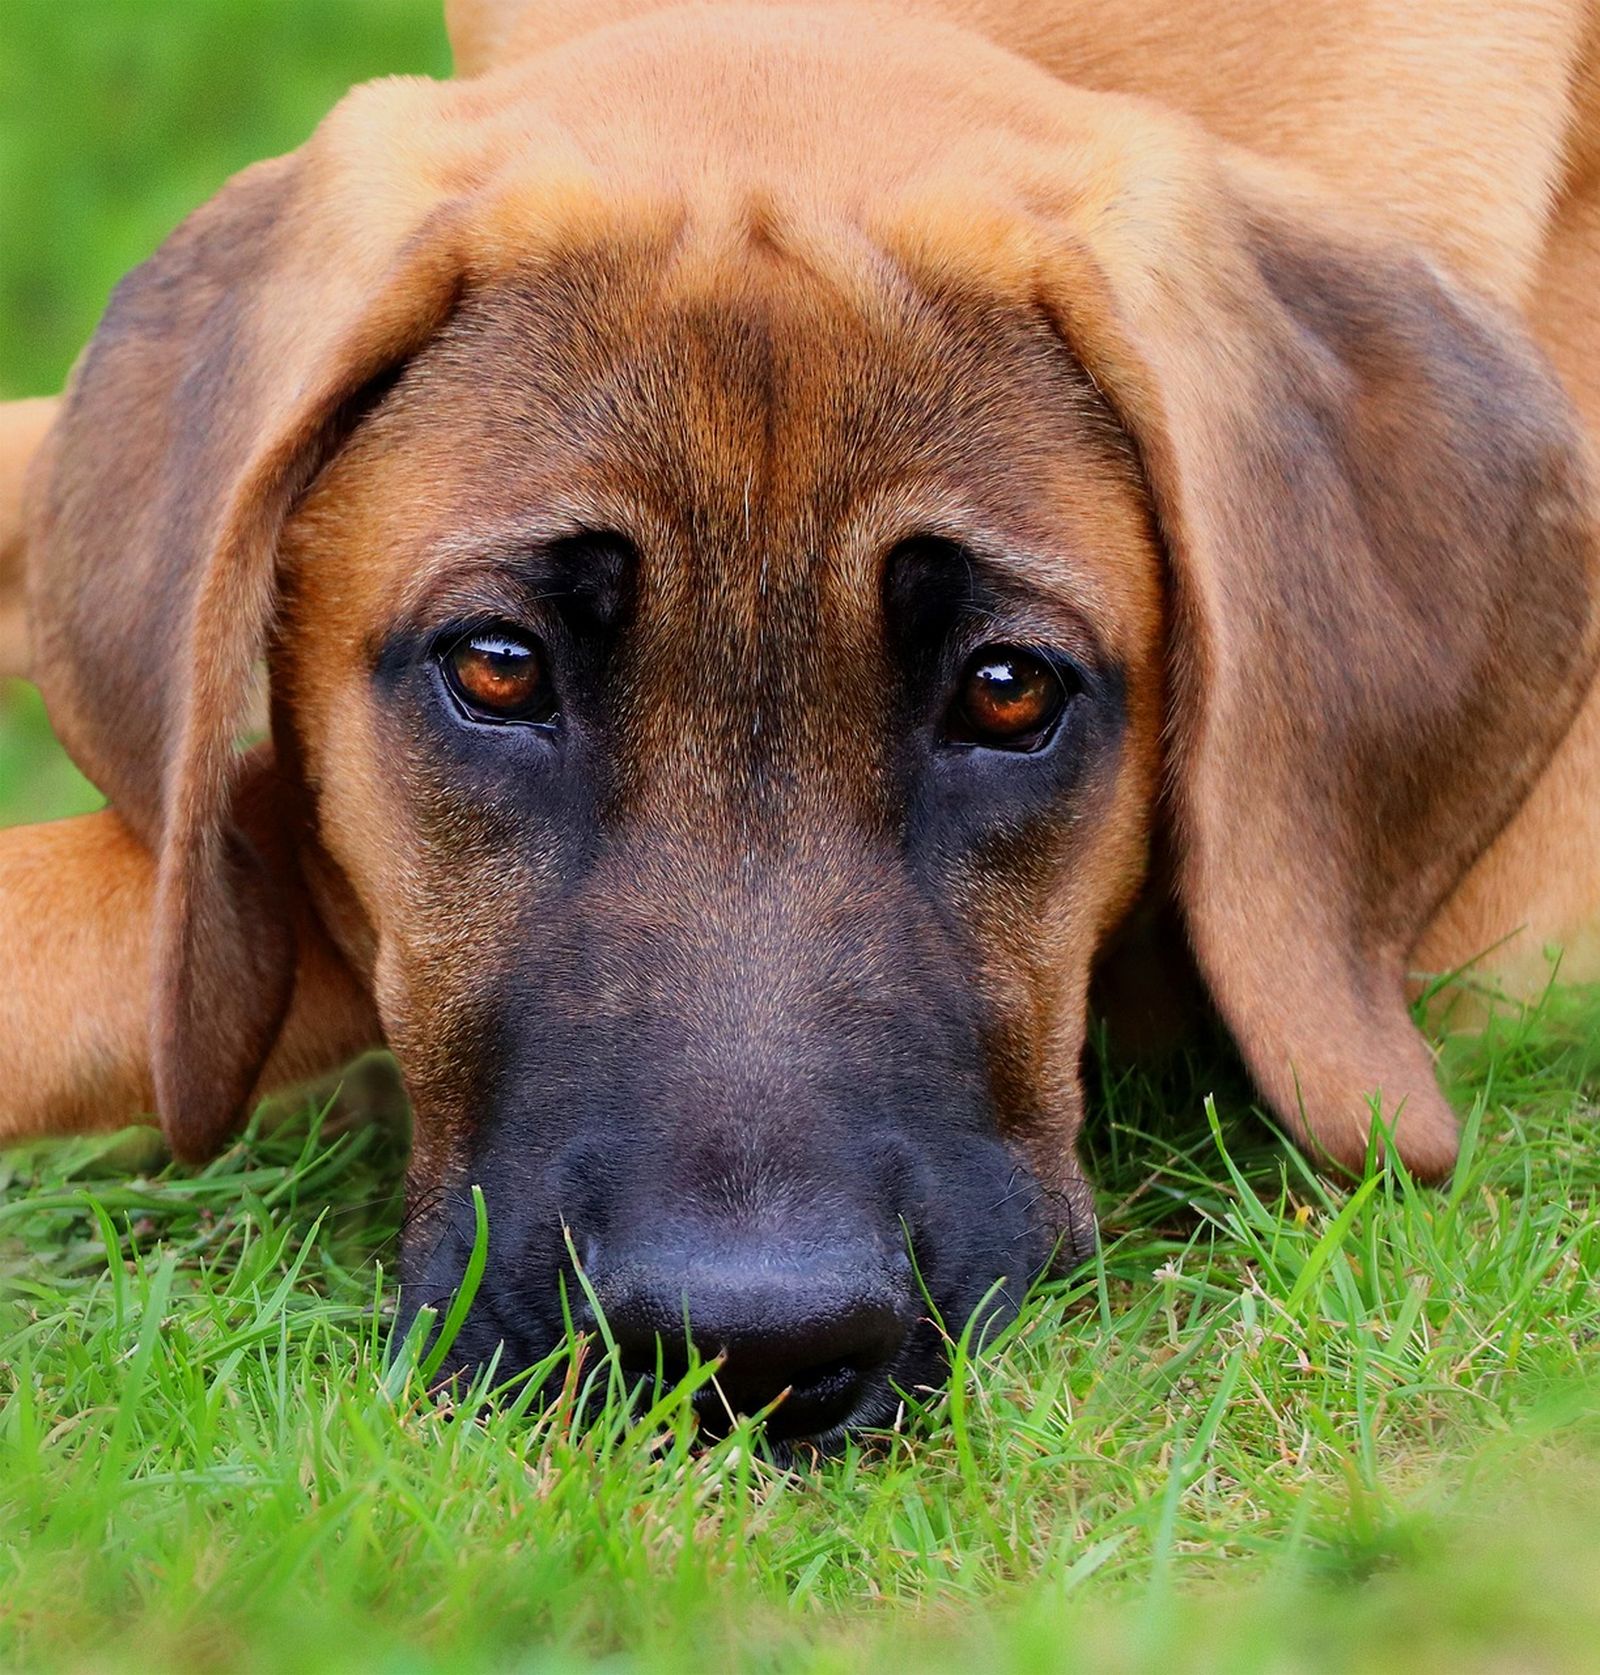 Ein Broholmer Hundewelpe im Großformat liegt mit seinem Kopf auf der Wiese und schaut den Betrachter frontal an